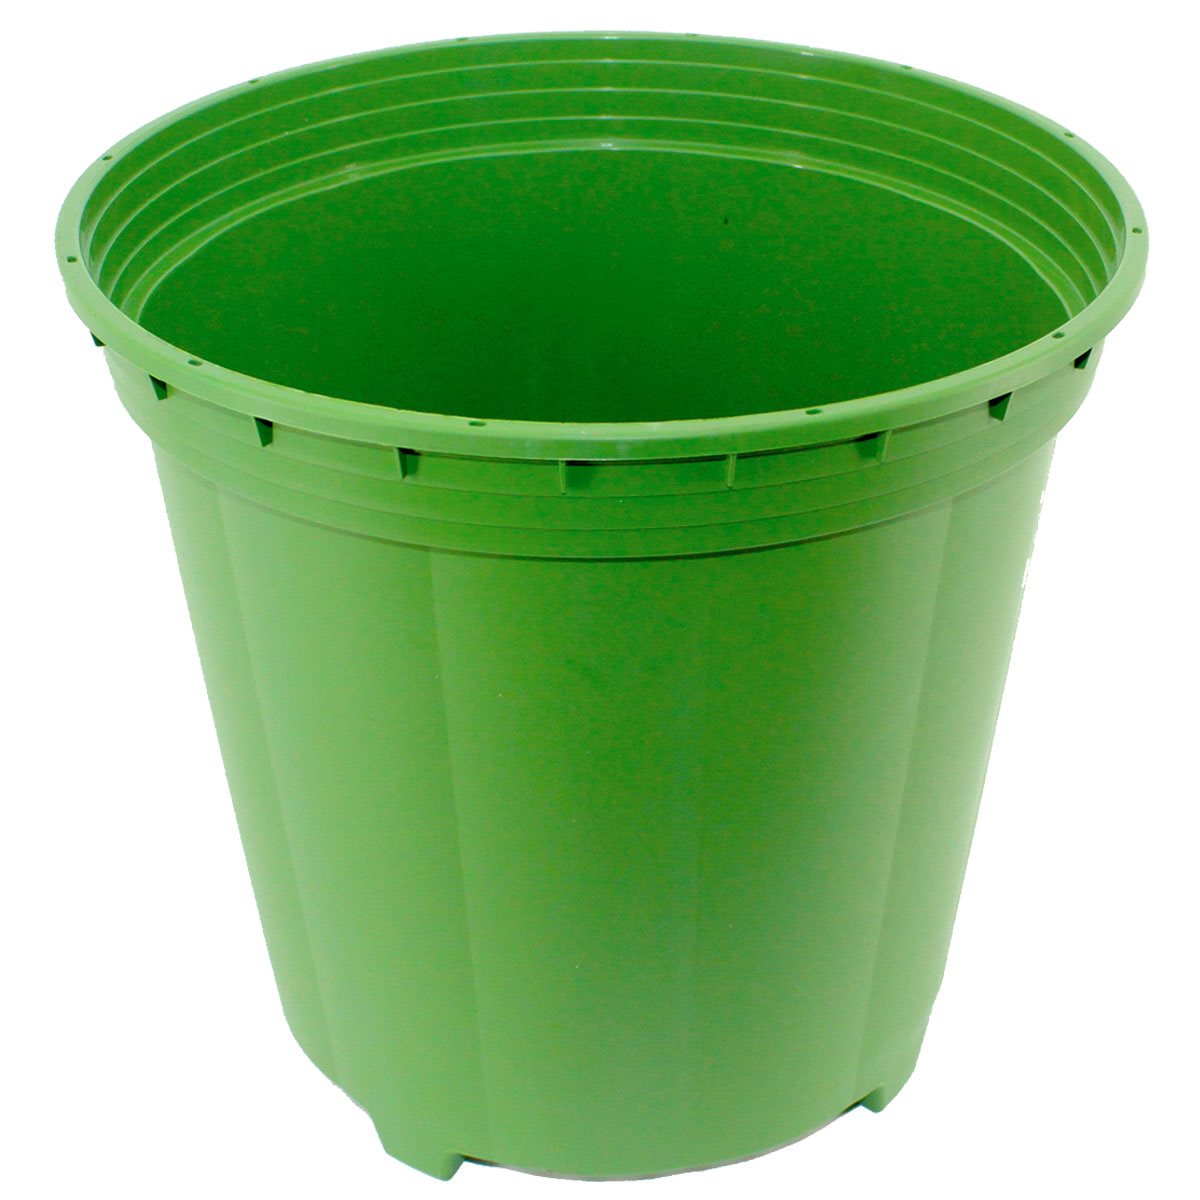 FloraFlex Pot Pro 3 Gallon Bucket